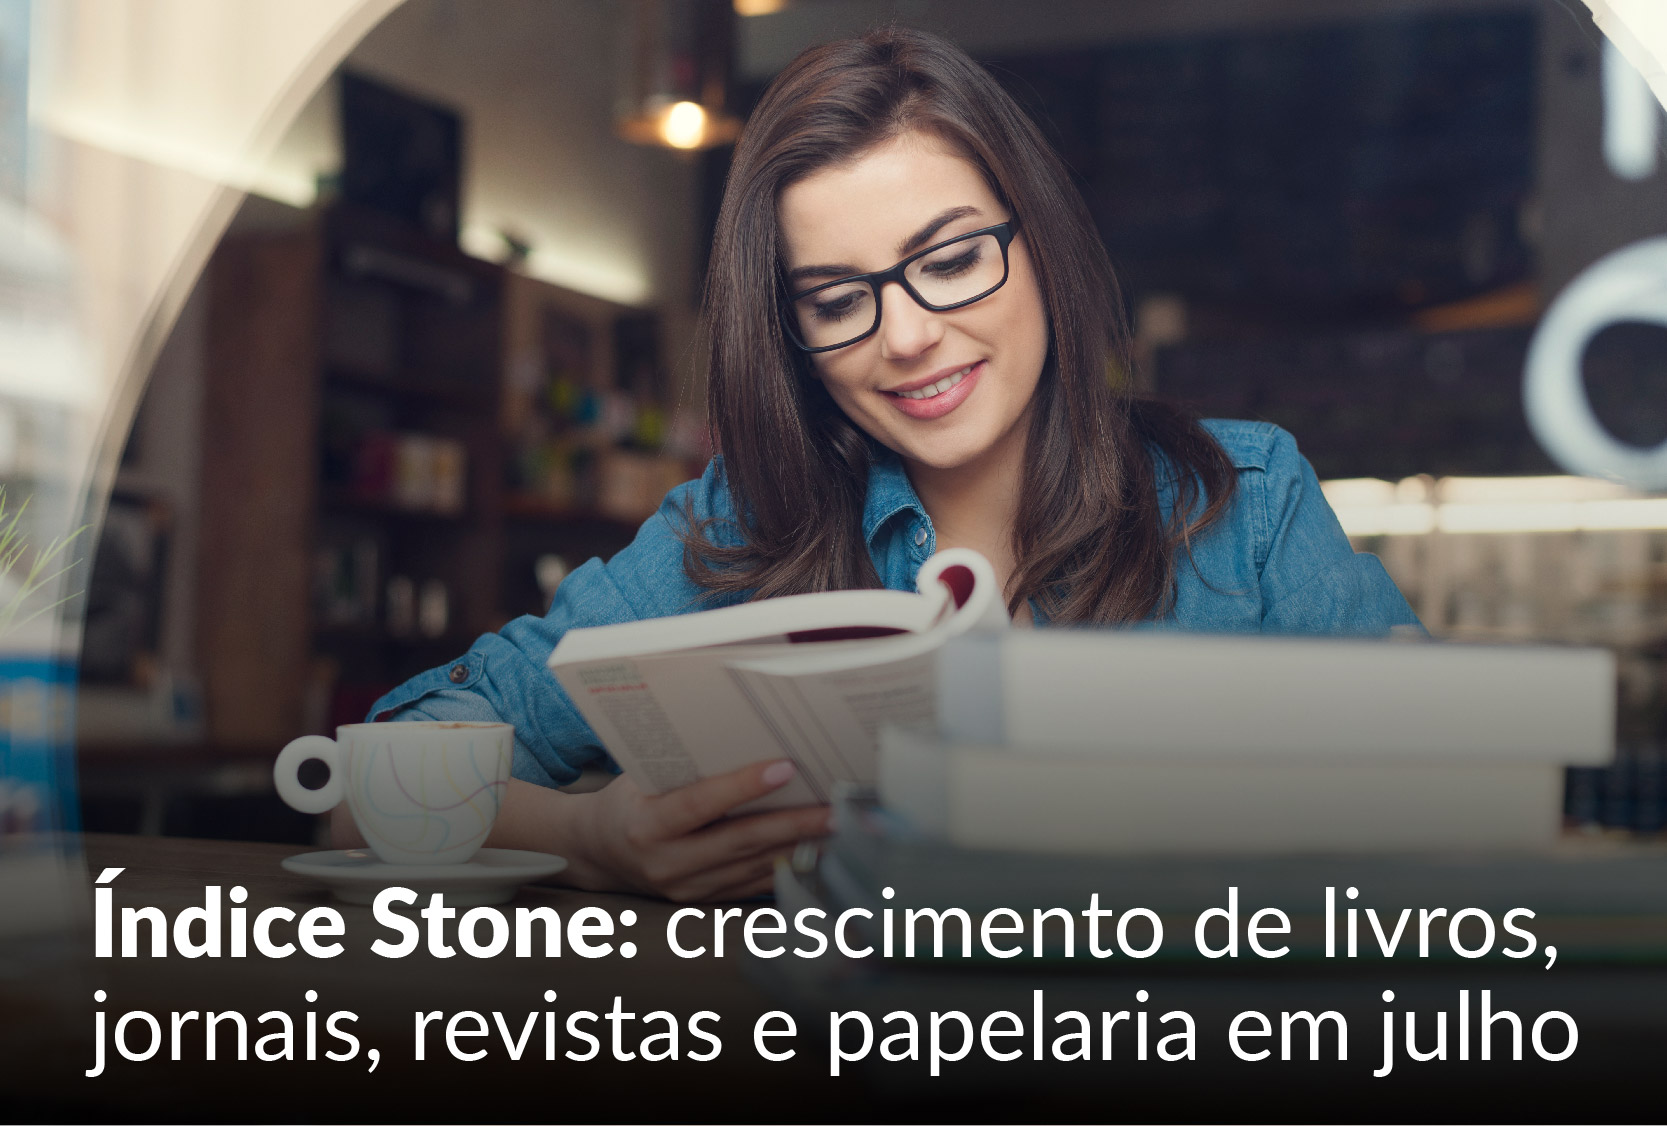 Índice Stone de Varejo aponta crescimento de livros, jornais, revistas e papelaria